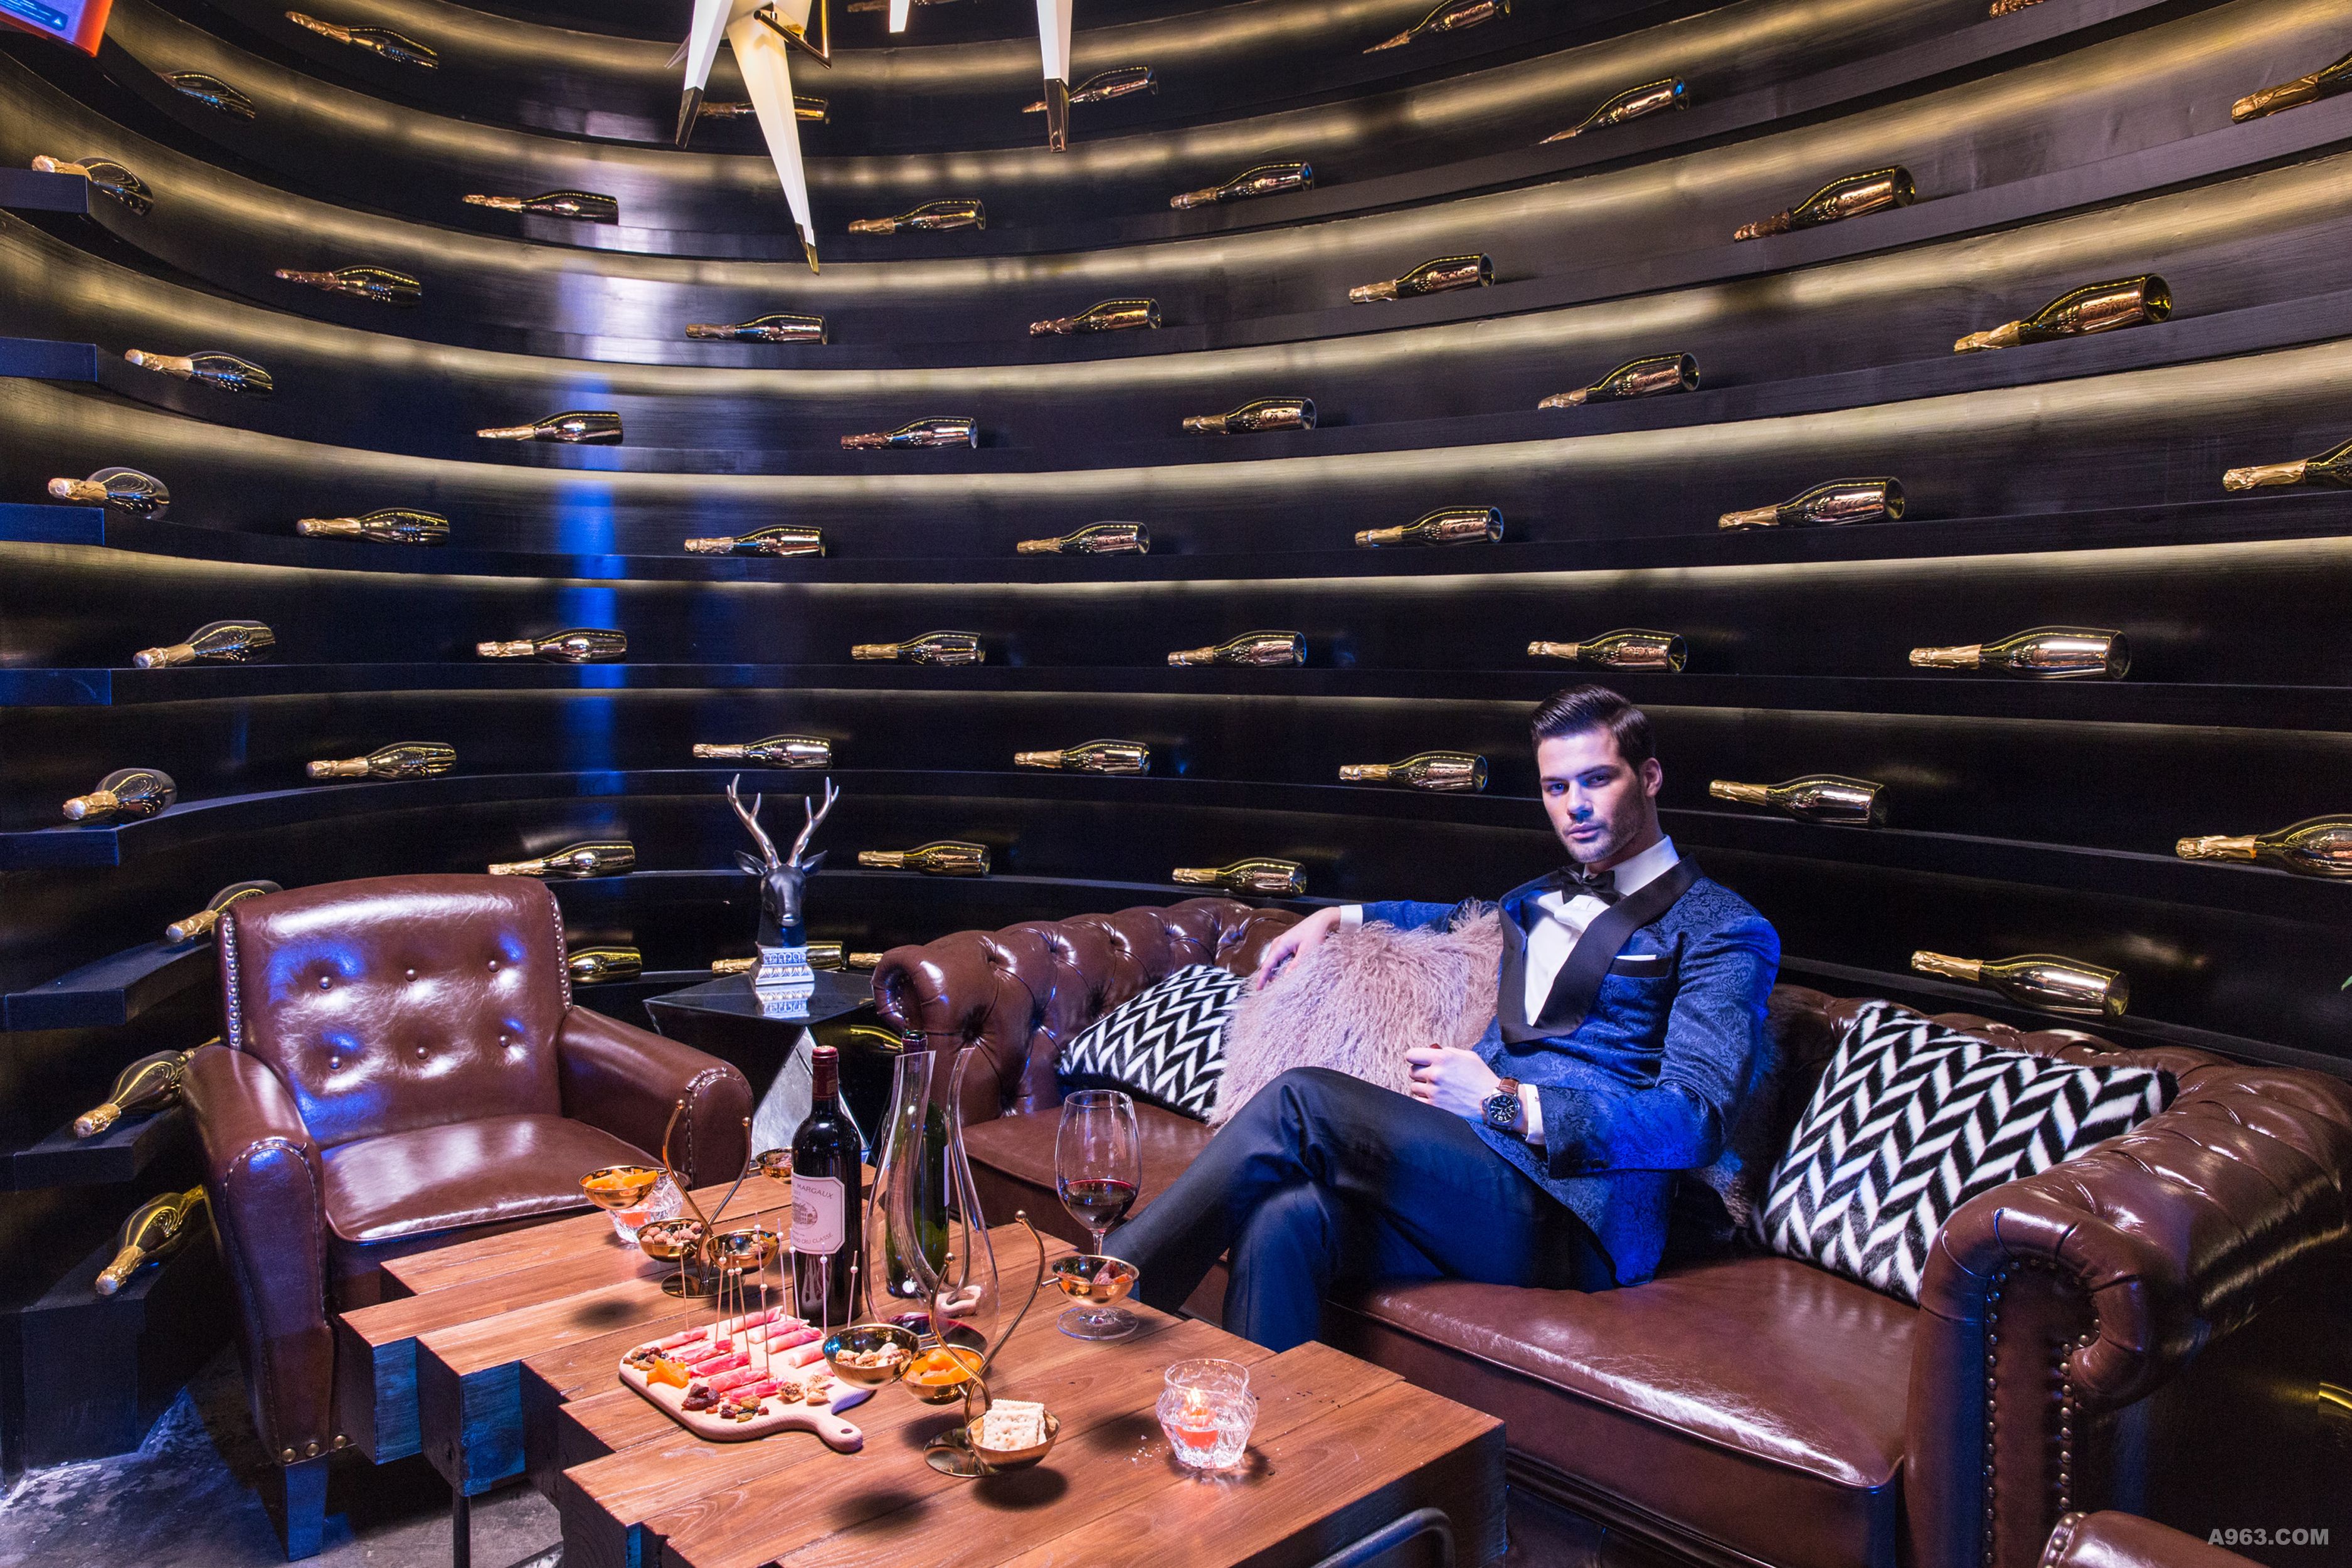 VIP品酒区是一个椭圆的的半开放空间，黑色的背景，层层金色的灯光，让空间具有强烈的视觉张力。